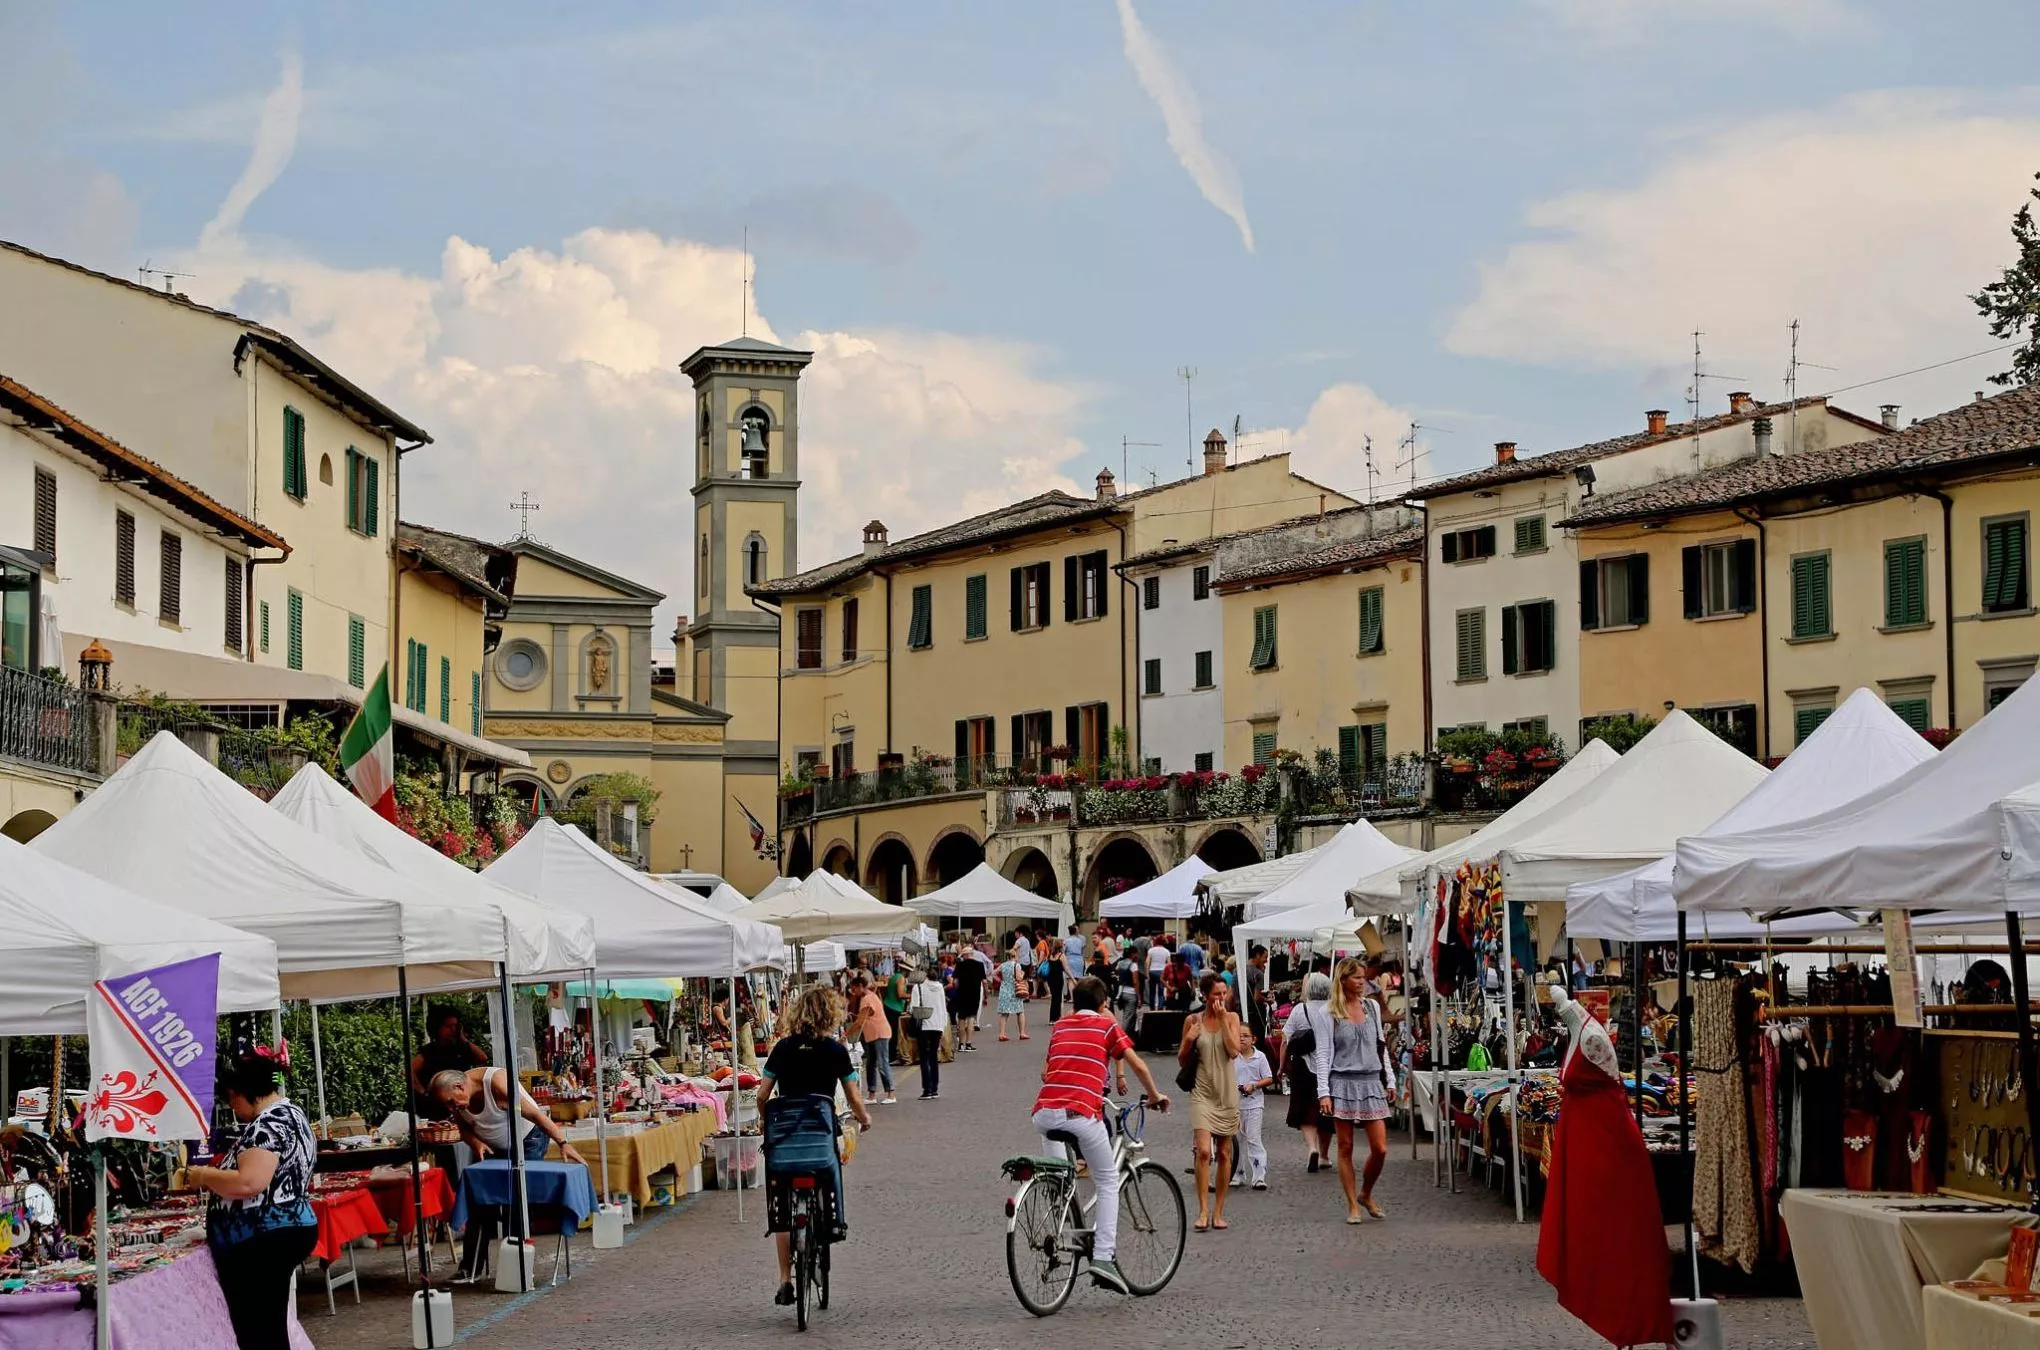 Jeden Samstag findet auf der Piazza Matteotti ein großer Markt mit einheimischen Produkten statt